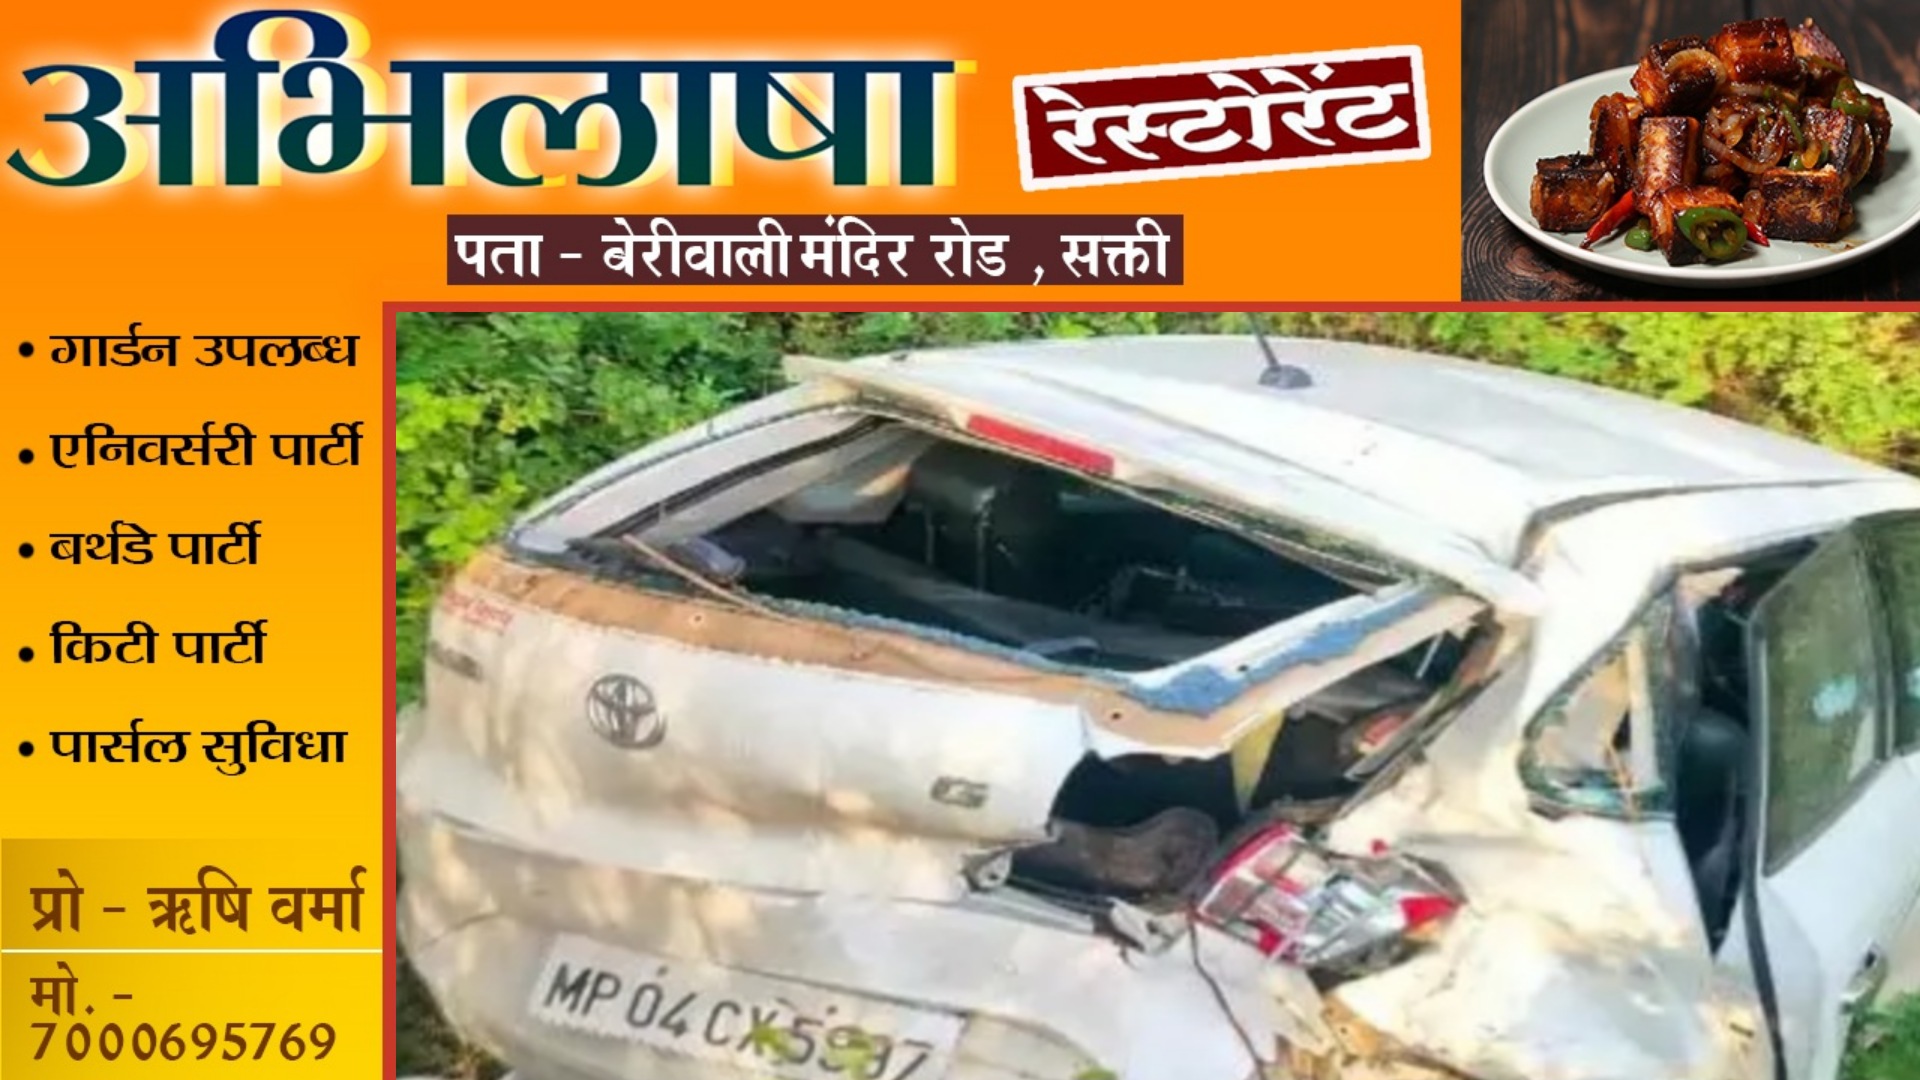 सड़क हादसे में भाजपा के पूर्व जिलाध्यक्ष की मौत , कार का टायर बदलते वक्त ट्रक ने मारी टक्कर